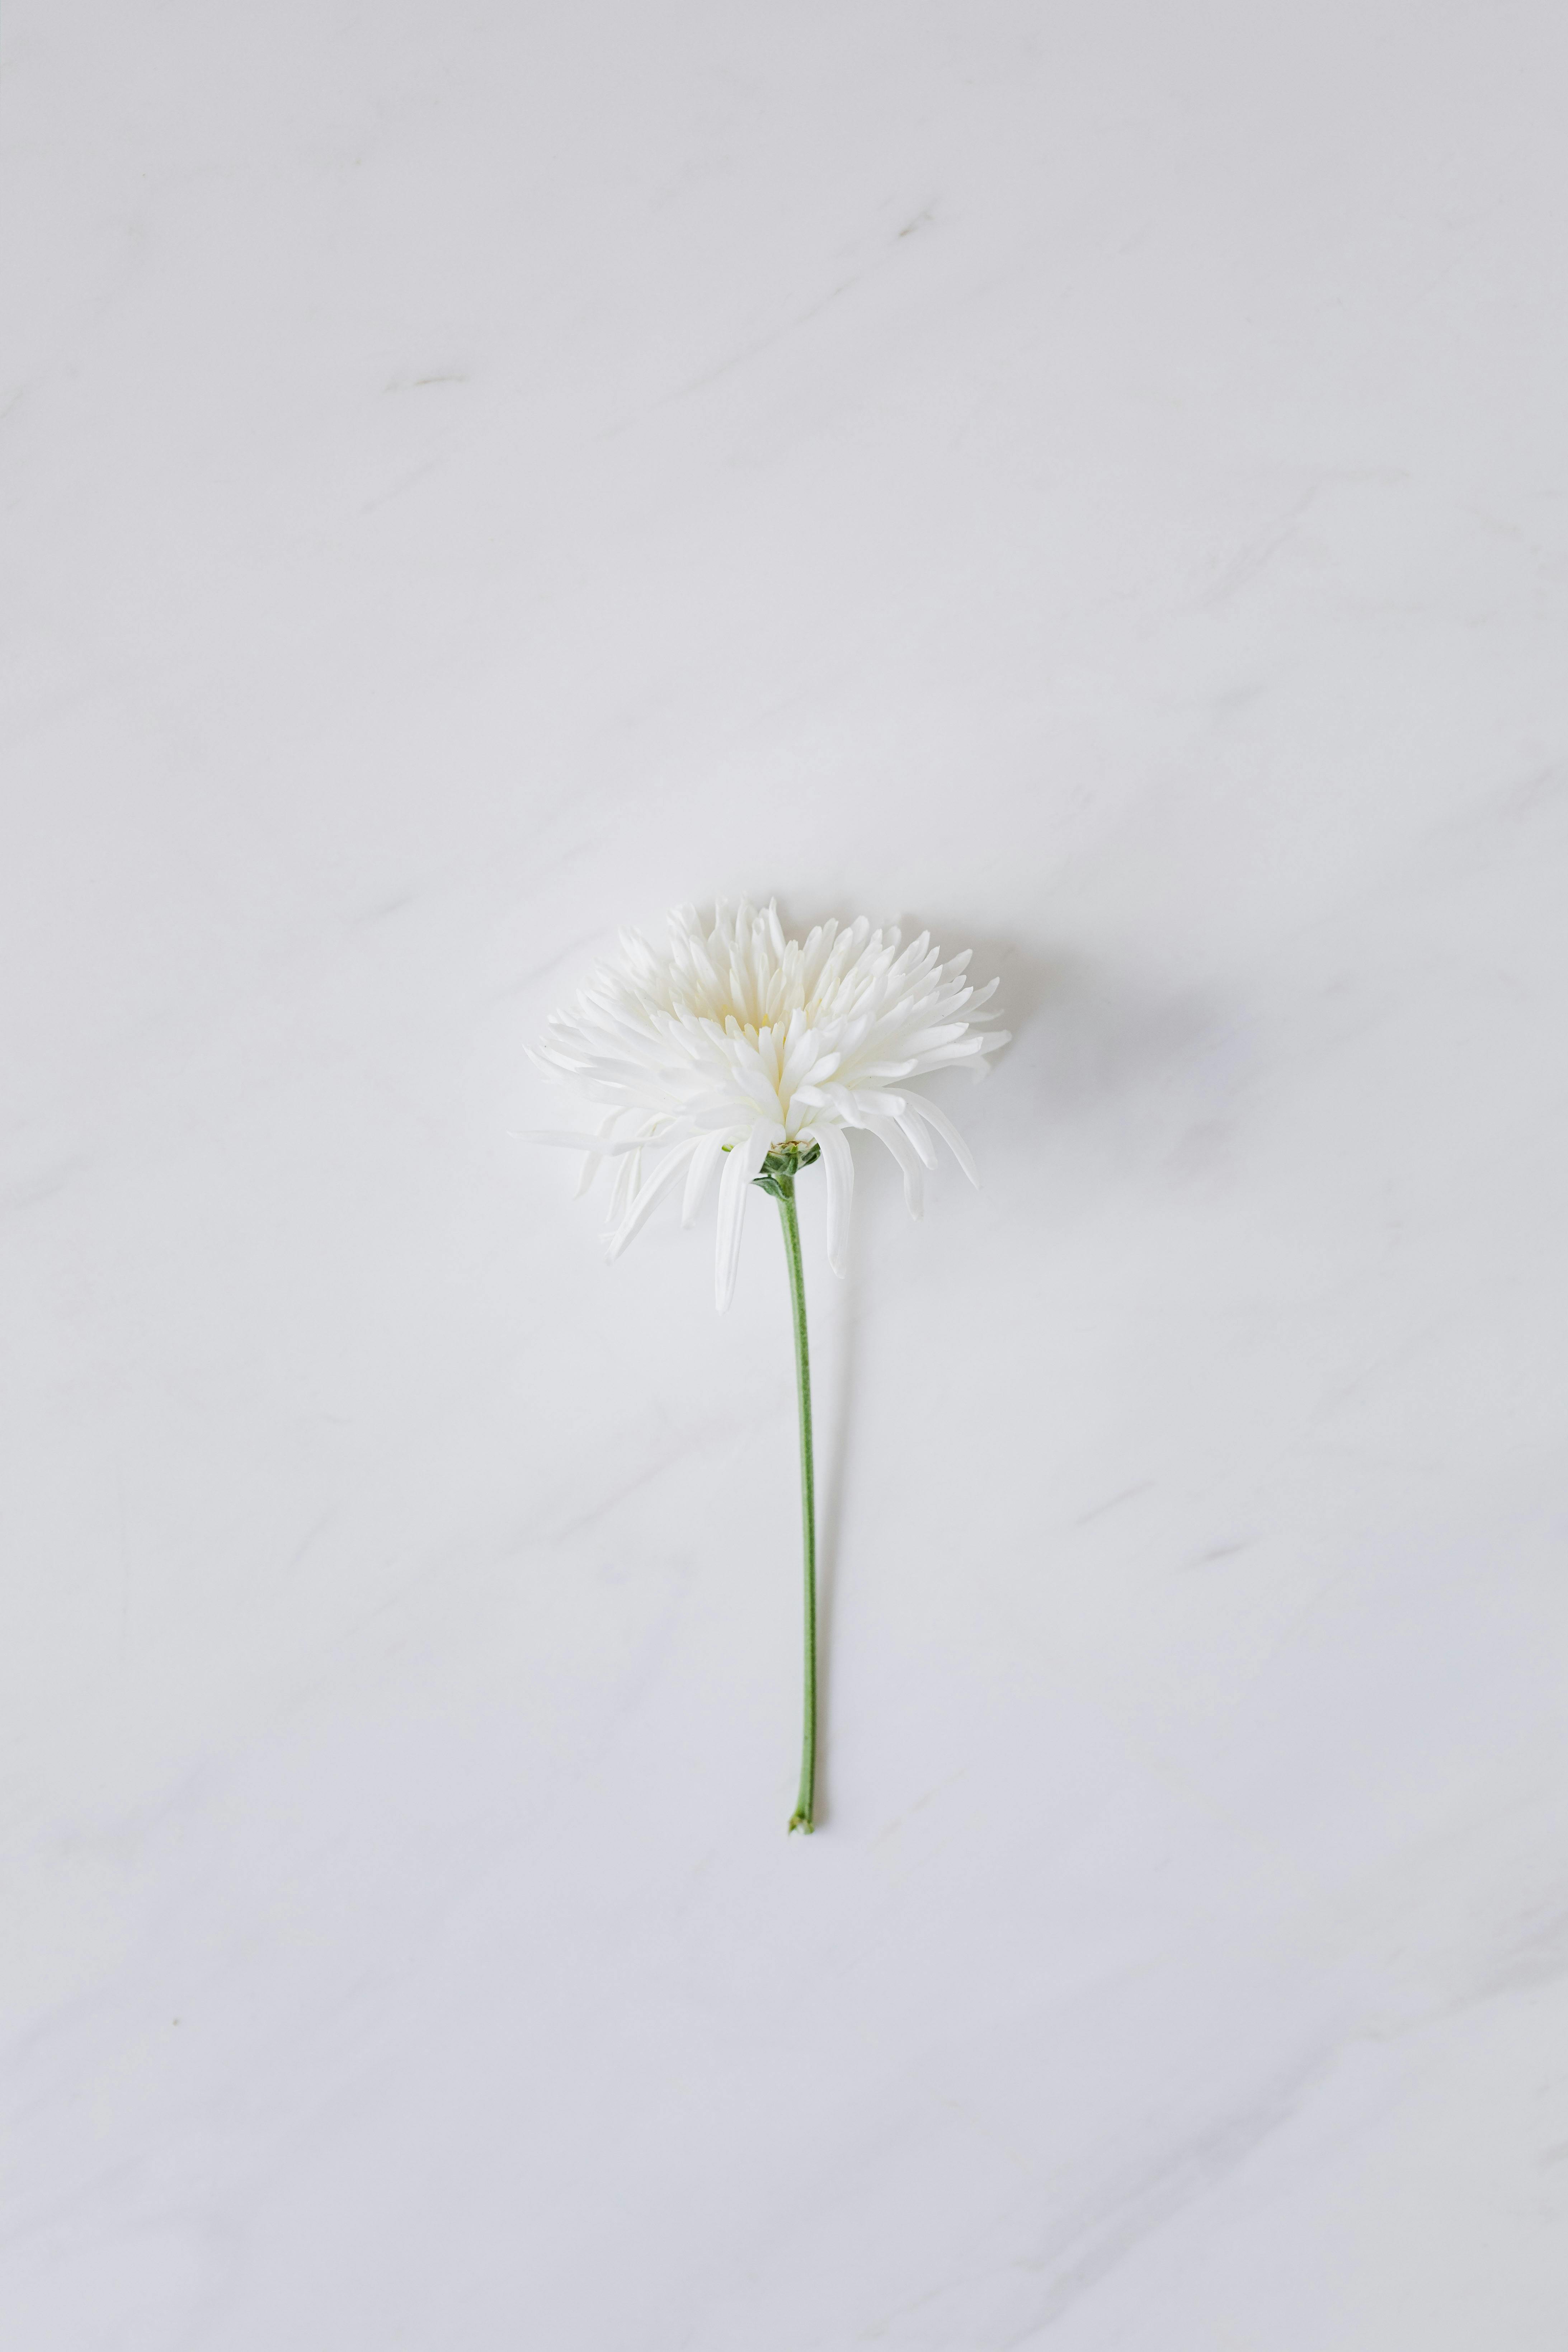 Hoa trắng trên nền trắng, ảnh miễn phí: Các bông hoa trắng đơn giản nhưng tinh tế đang là một trong những xu hướng trang trí phổ biến nhất hiện nay. Với ảnh miễn phí này, bạn có thể thấy sự đẹp đẽ và tinh tế của những bông hoa trắng hoàn hảo trên nền trắng sáng. Nhấn chuột vào hình ảnh để tải về và sử dụng miễn phí trong các dự án của bạn.